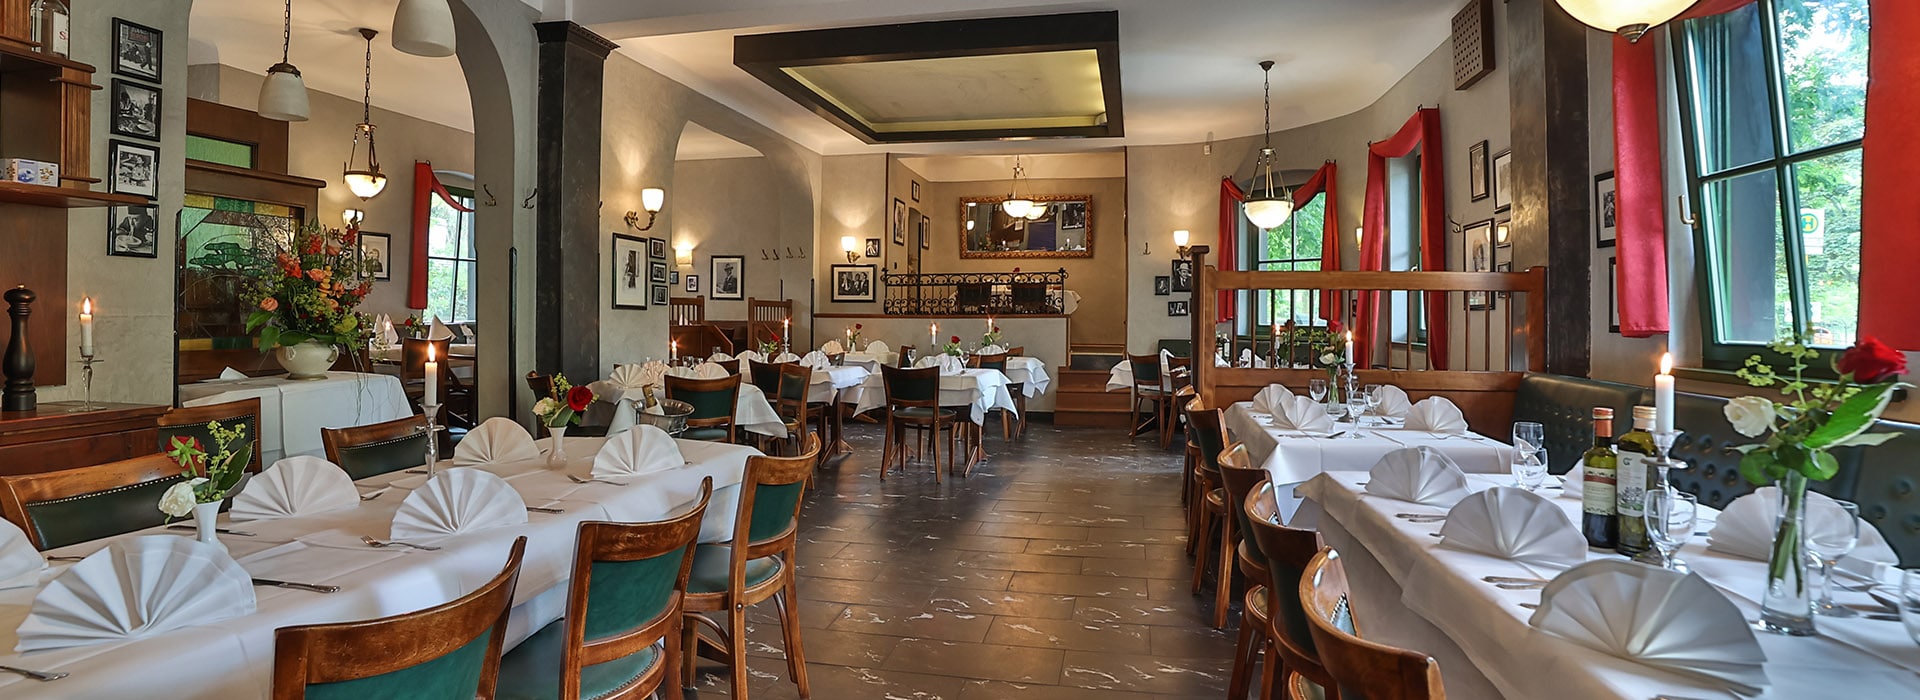 ristorante-bb-paparazzi-italienisches-restaurant-berlin-marzahn-slider-1920x700-slide1